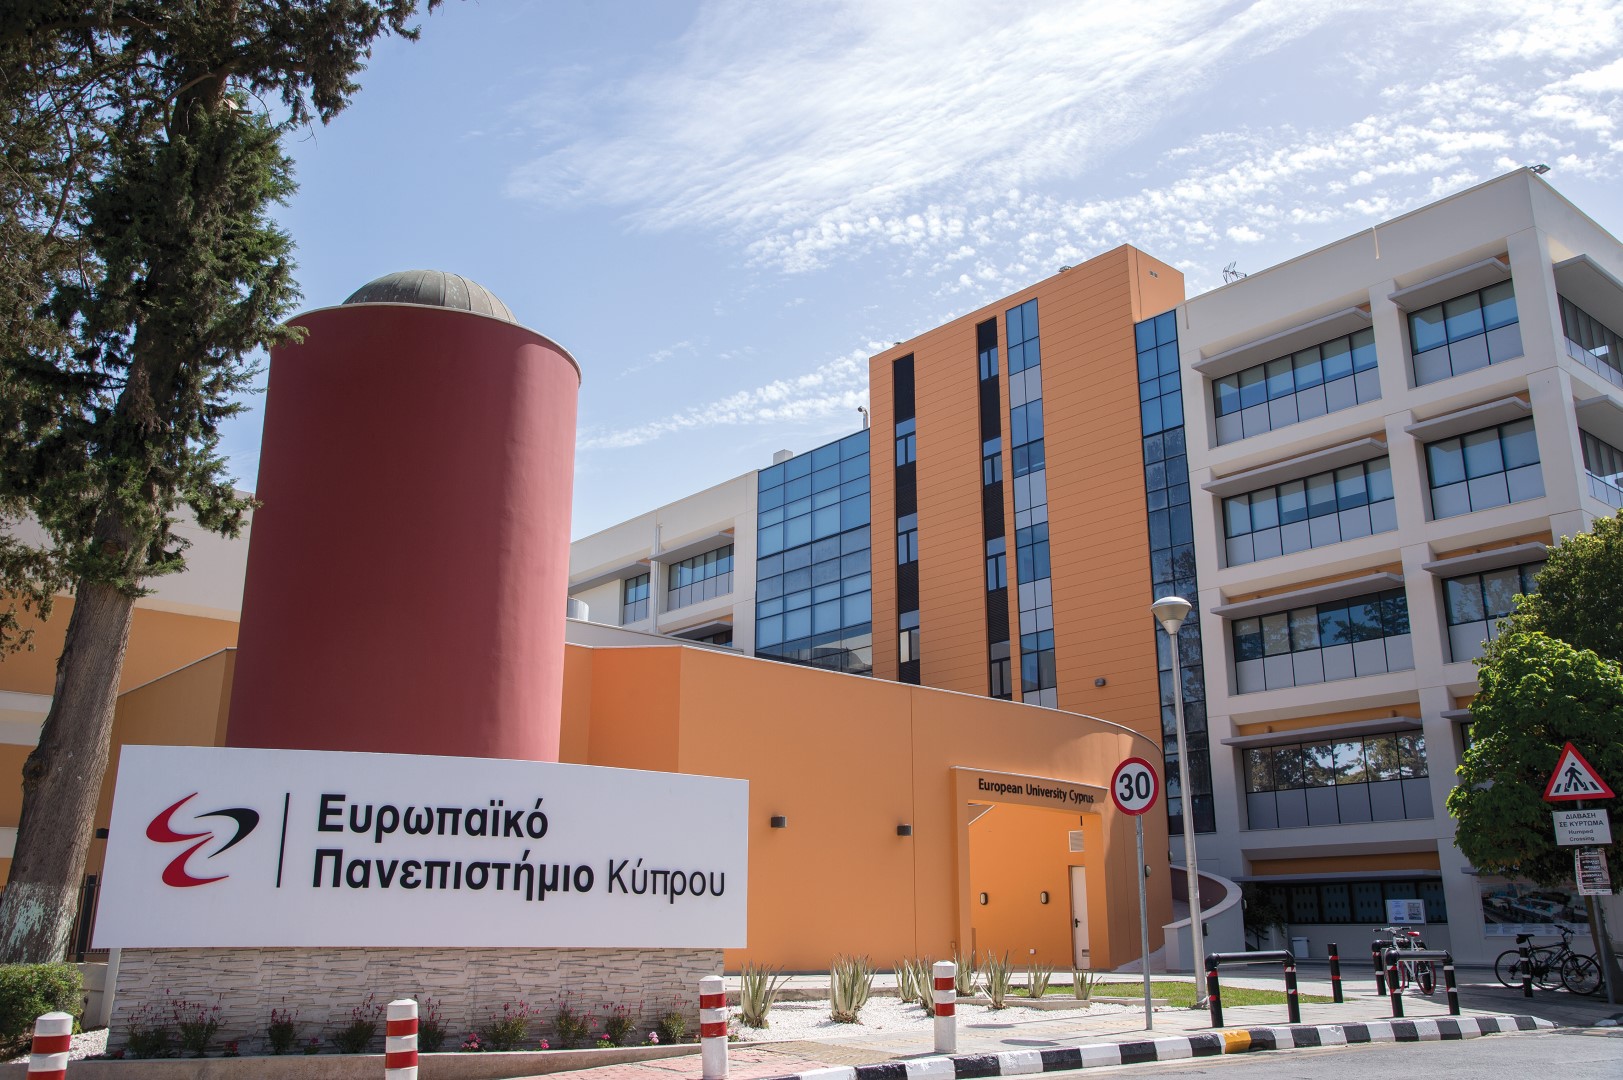 Το CERIDES του Ευρωπαϊκού Πανεπιστημίου Κύπρου συντονίζει το Ευρωπαικό Πρόγραμμα Η2020 RESPOND-Α